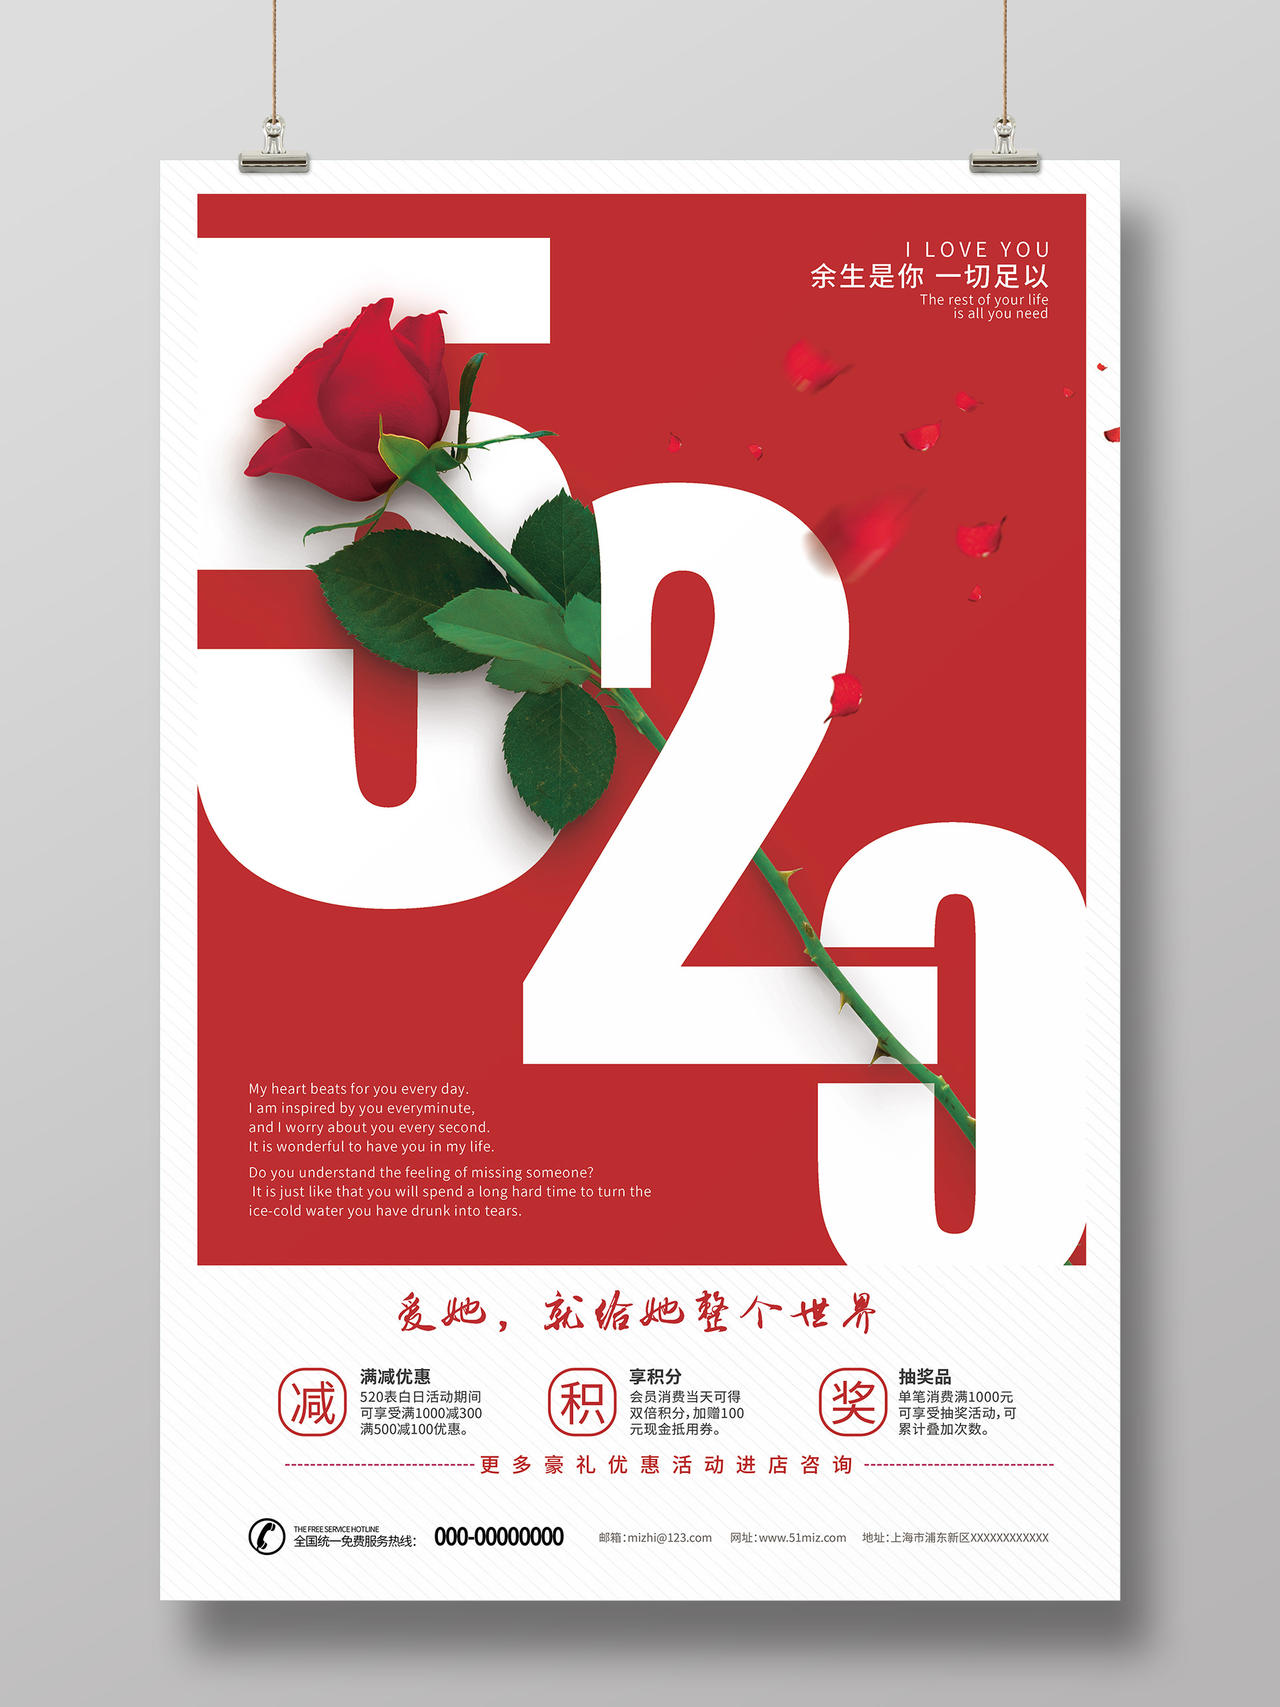 玫瑰520爱她就给她整个世界浪漫勇敢表达爱促销活动海报520